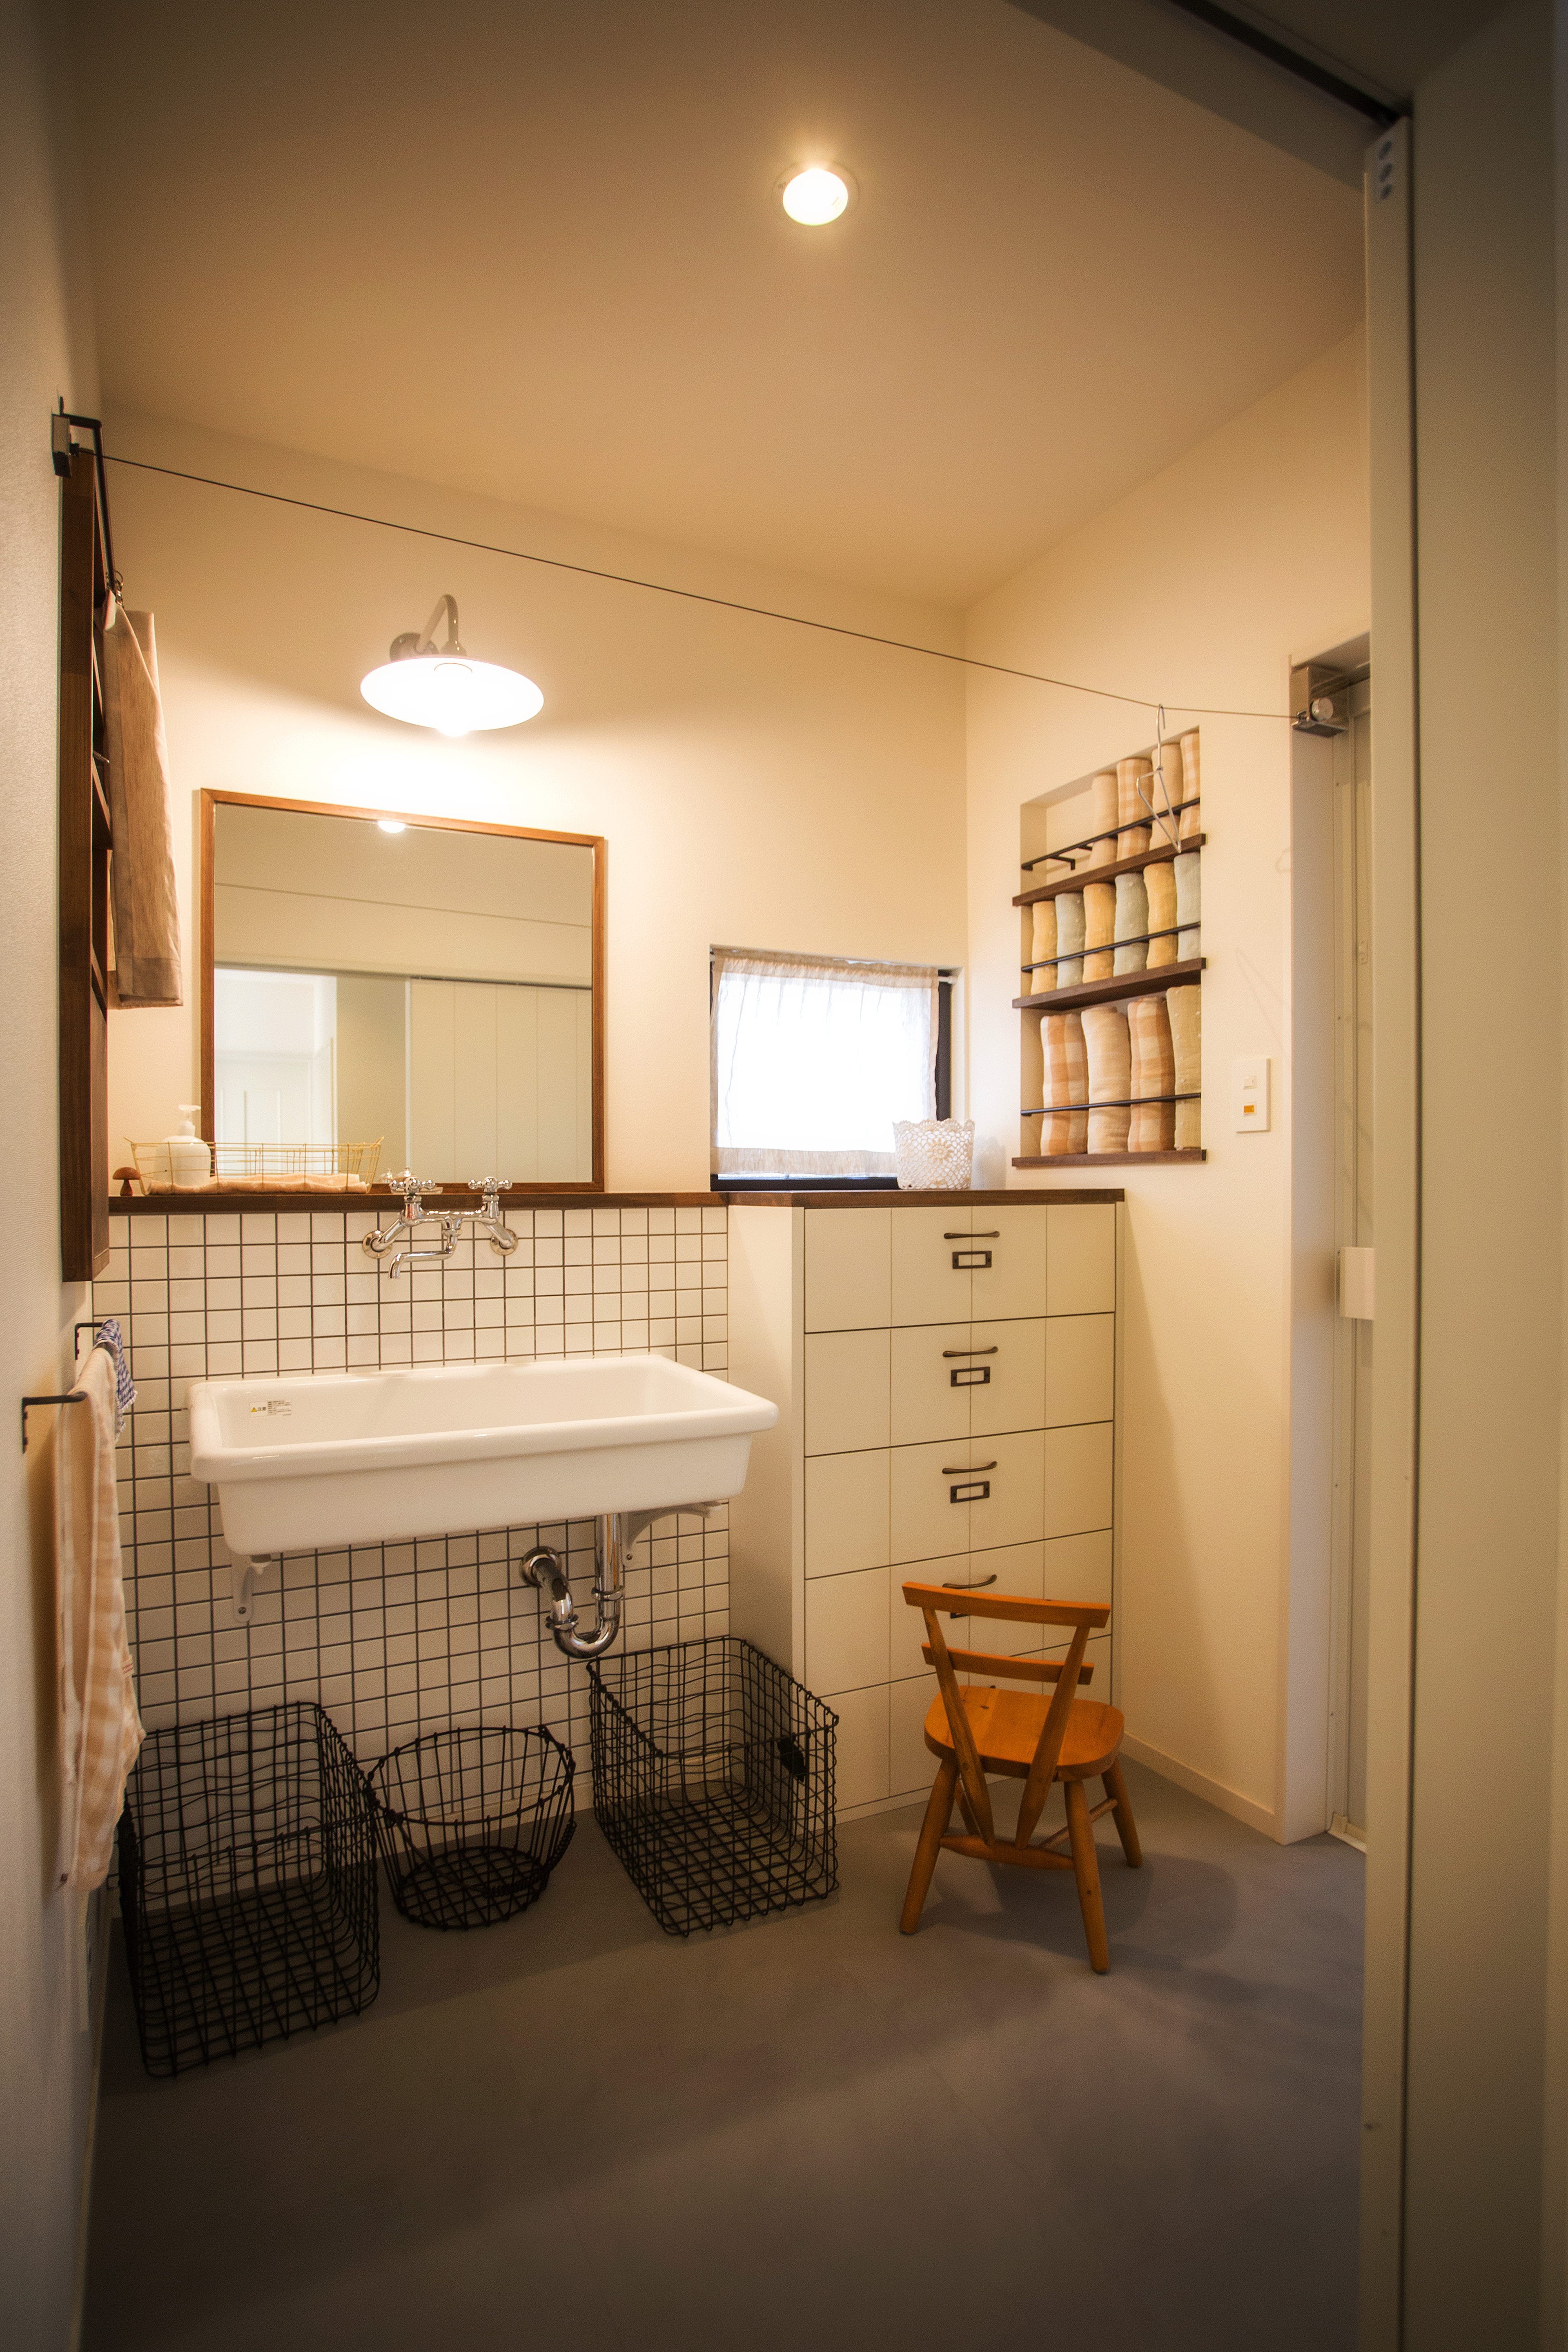 プライベートな空間もオシャレに 洗面所の実例集 Enon Style 愛媛でできる素敵な暮し方